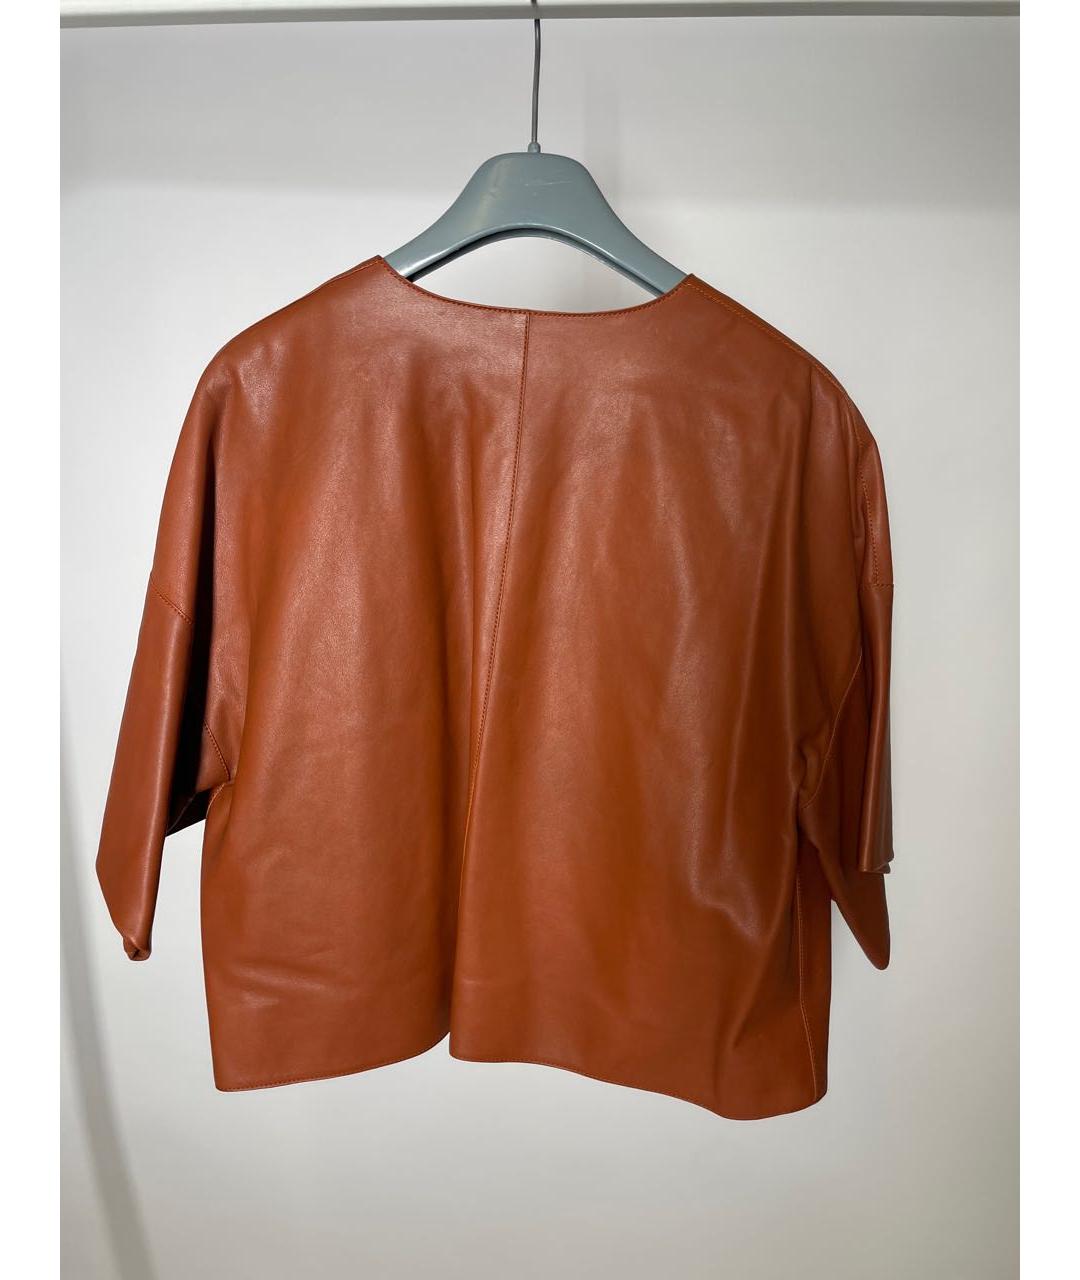 HERMES PRE-OWNED Коричневый кожаный жакет/пиджак, фото 2